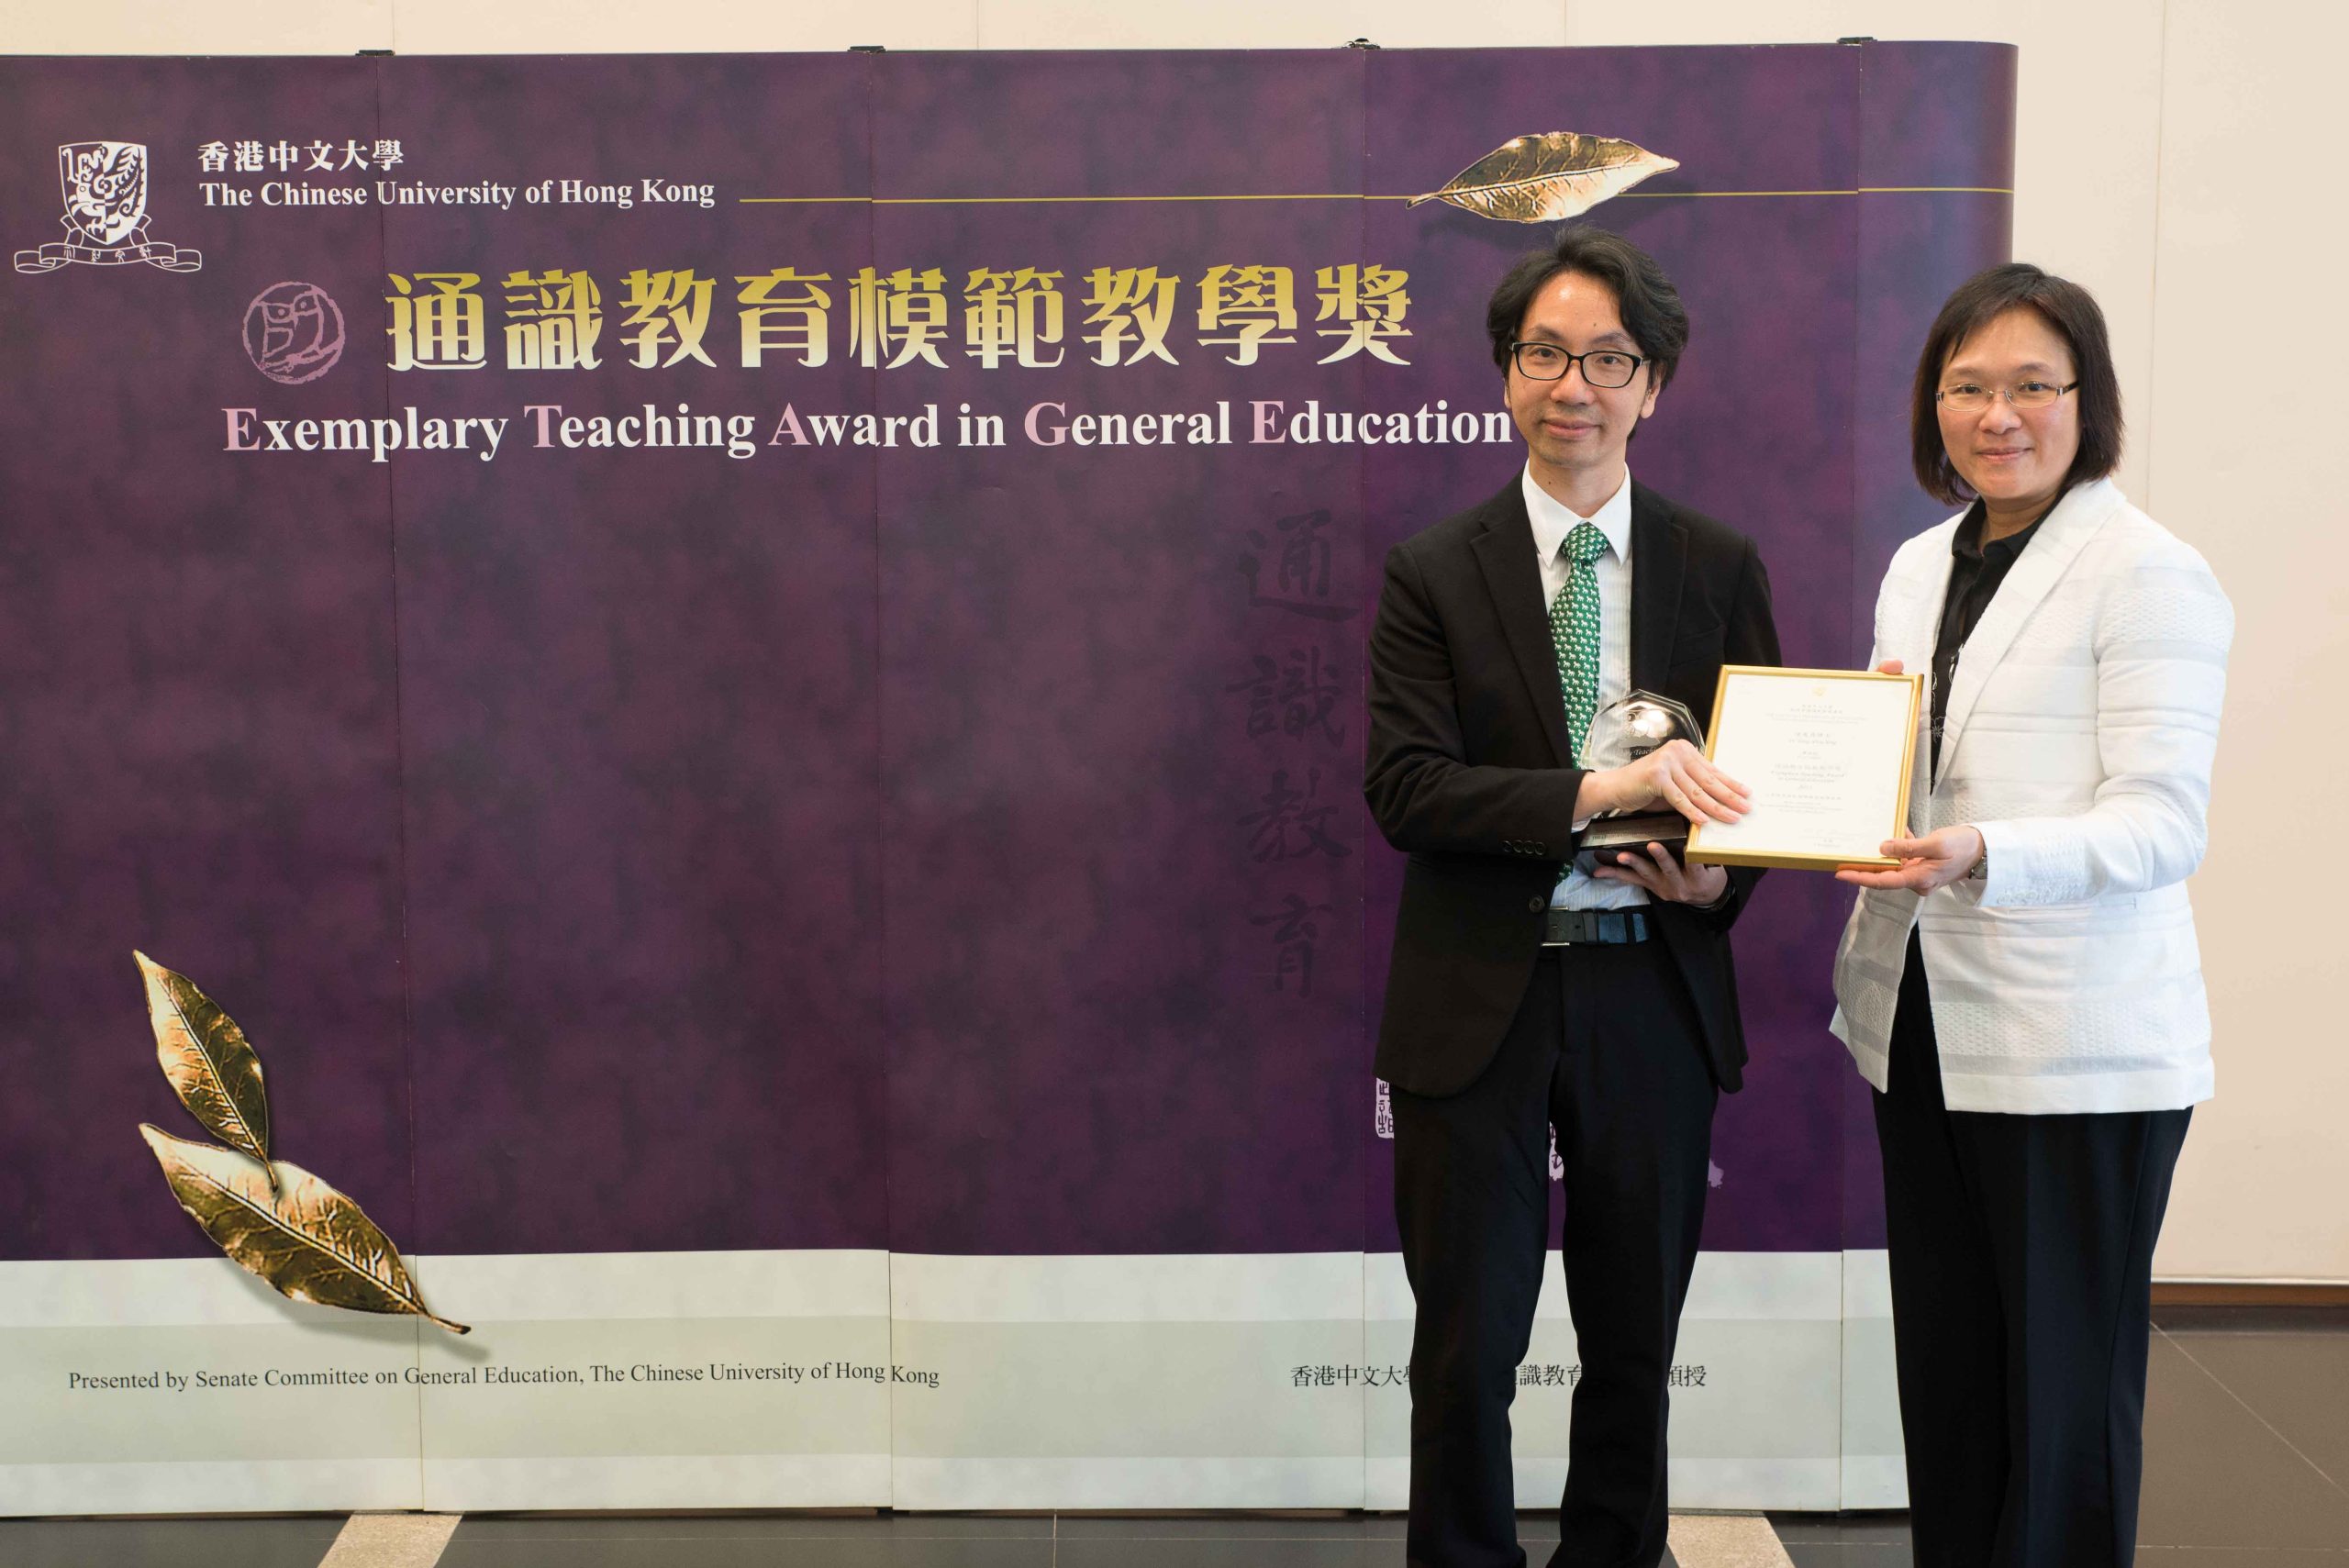 Presentation of award to Dr. Tong Shiu Sing